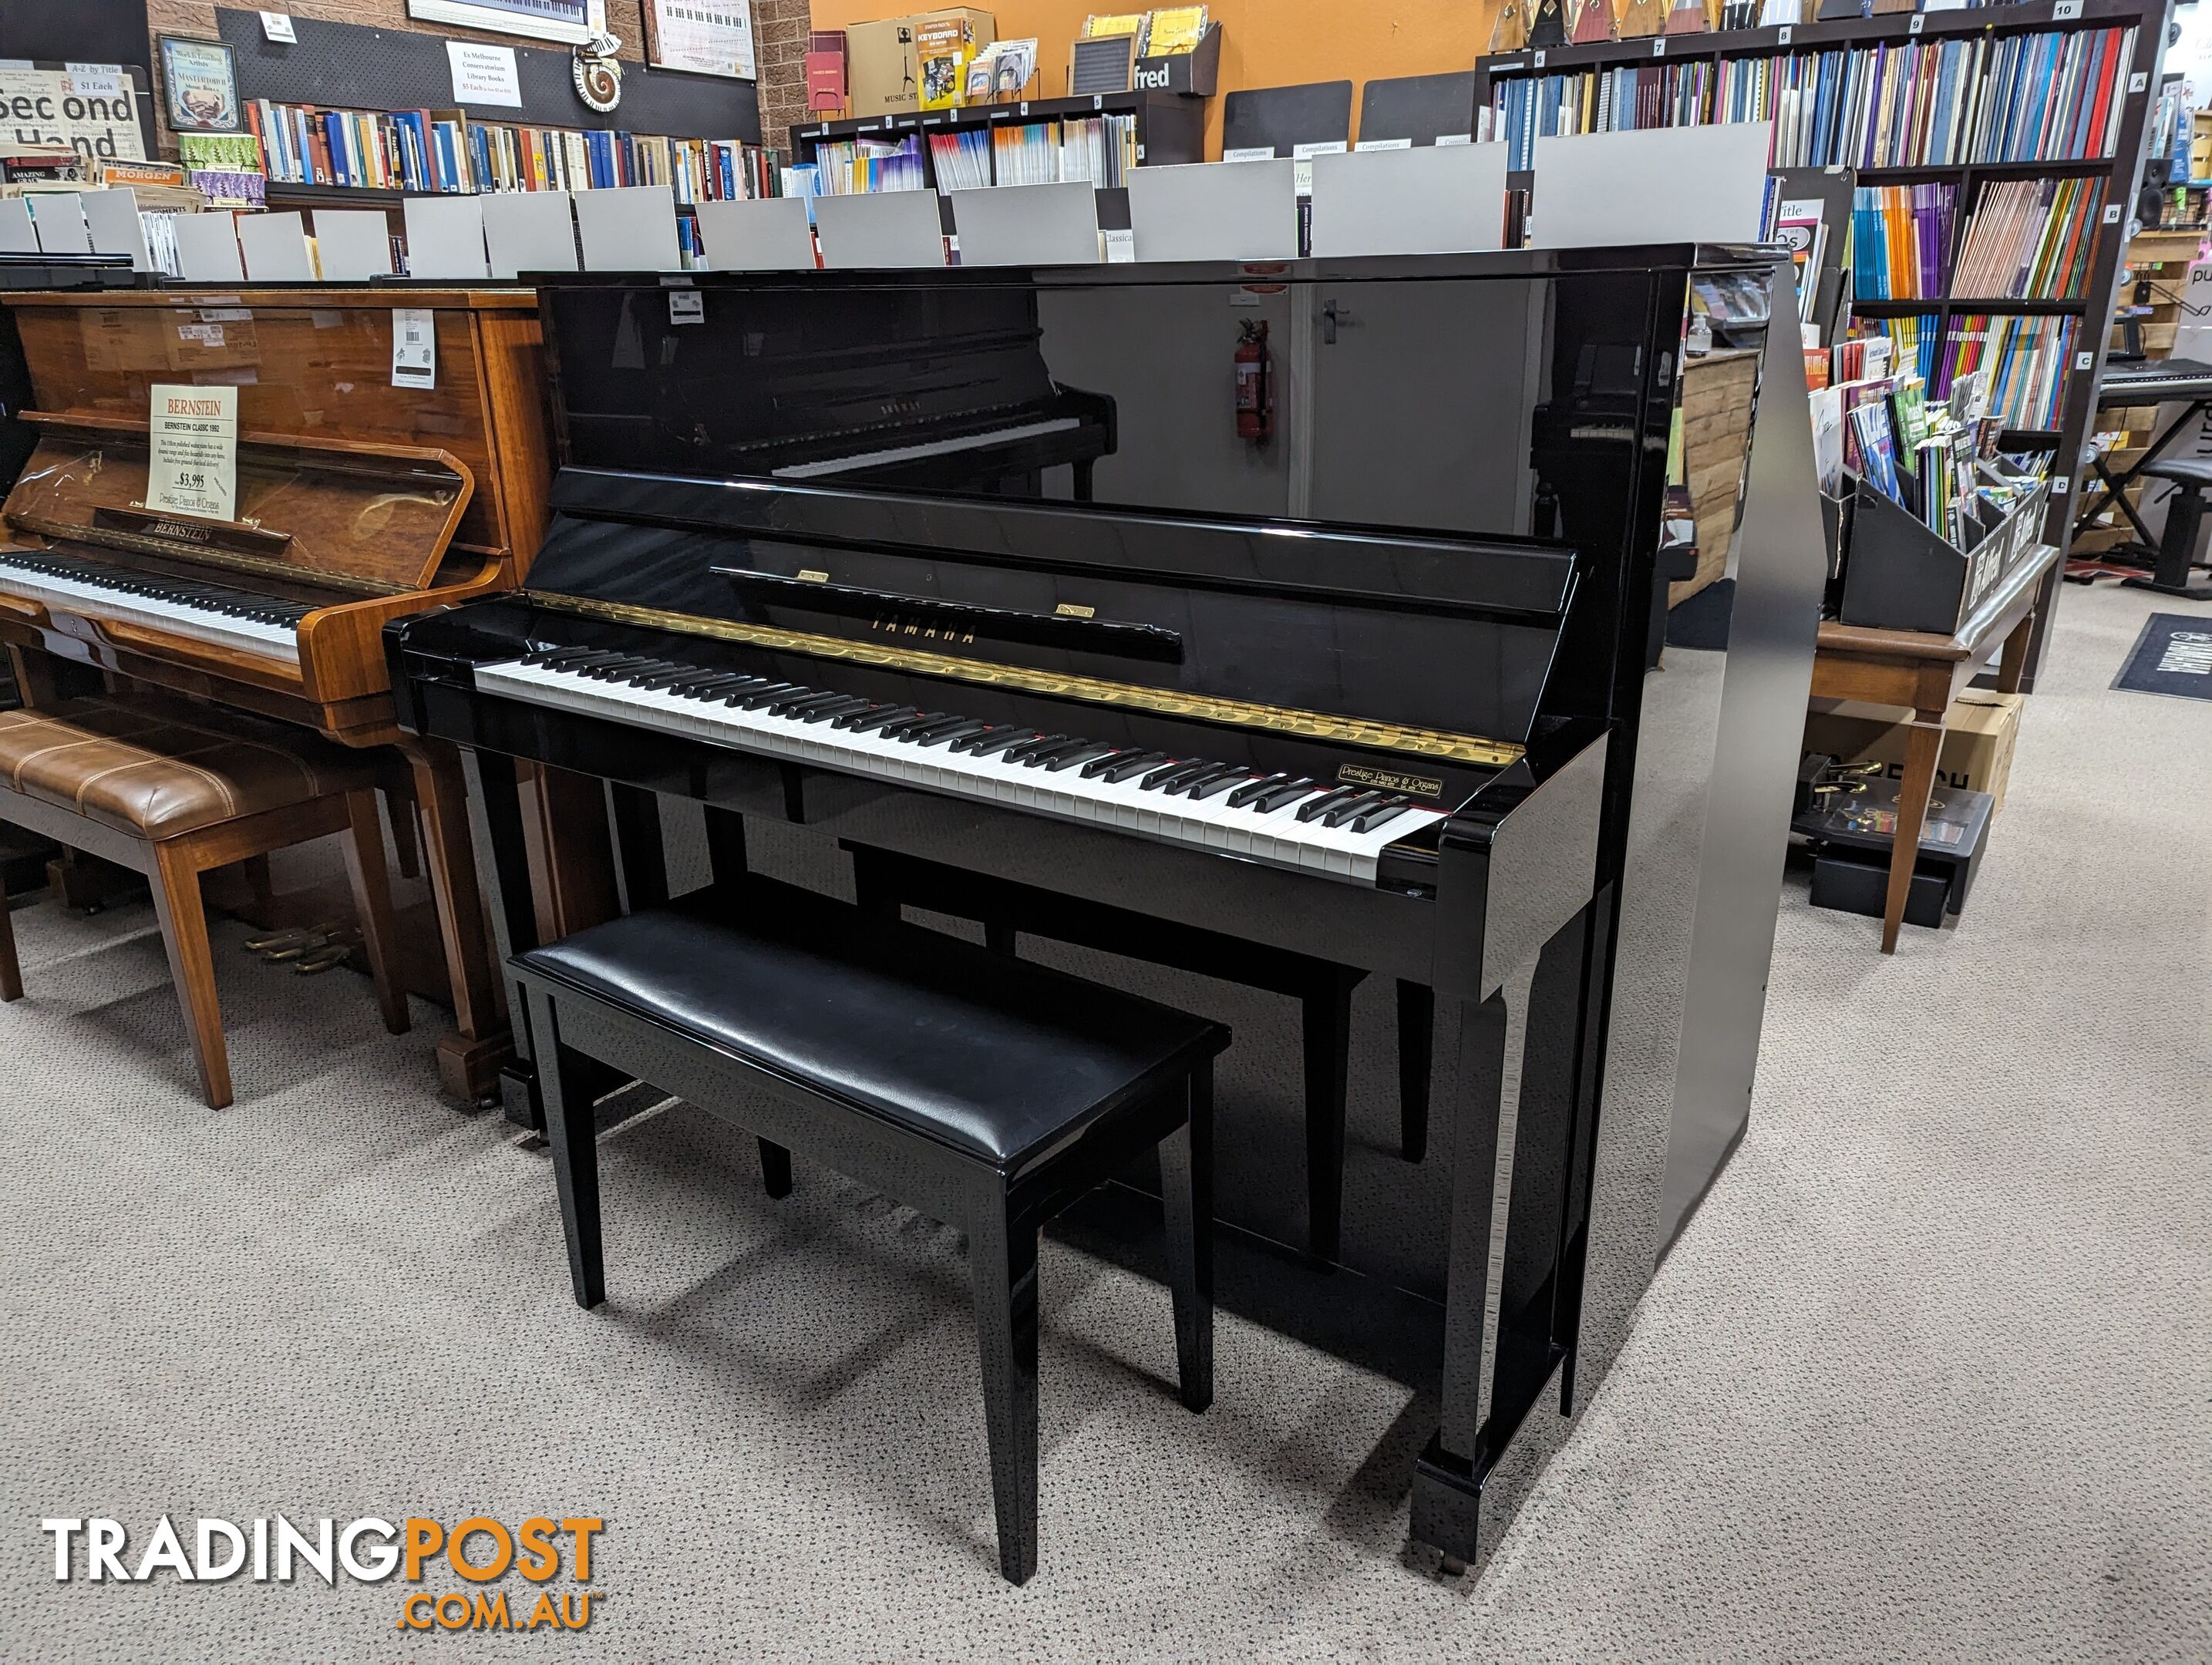 Yamaha 121cm Upright Piano  T121 in Polished Ebony